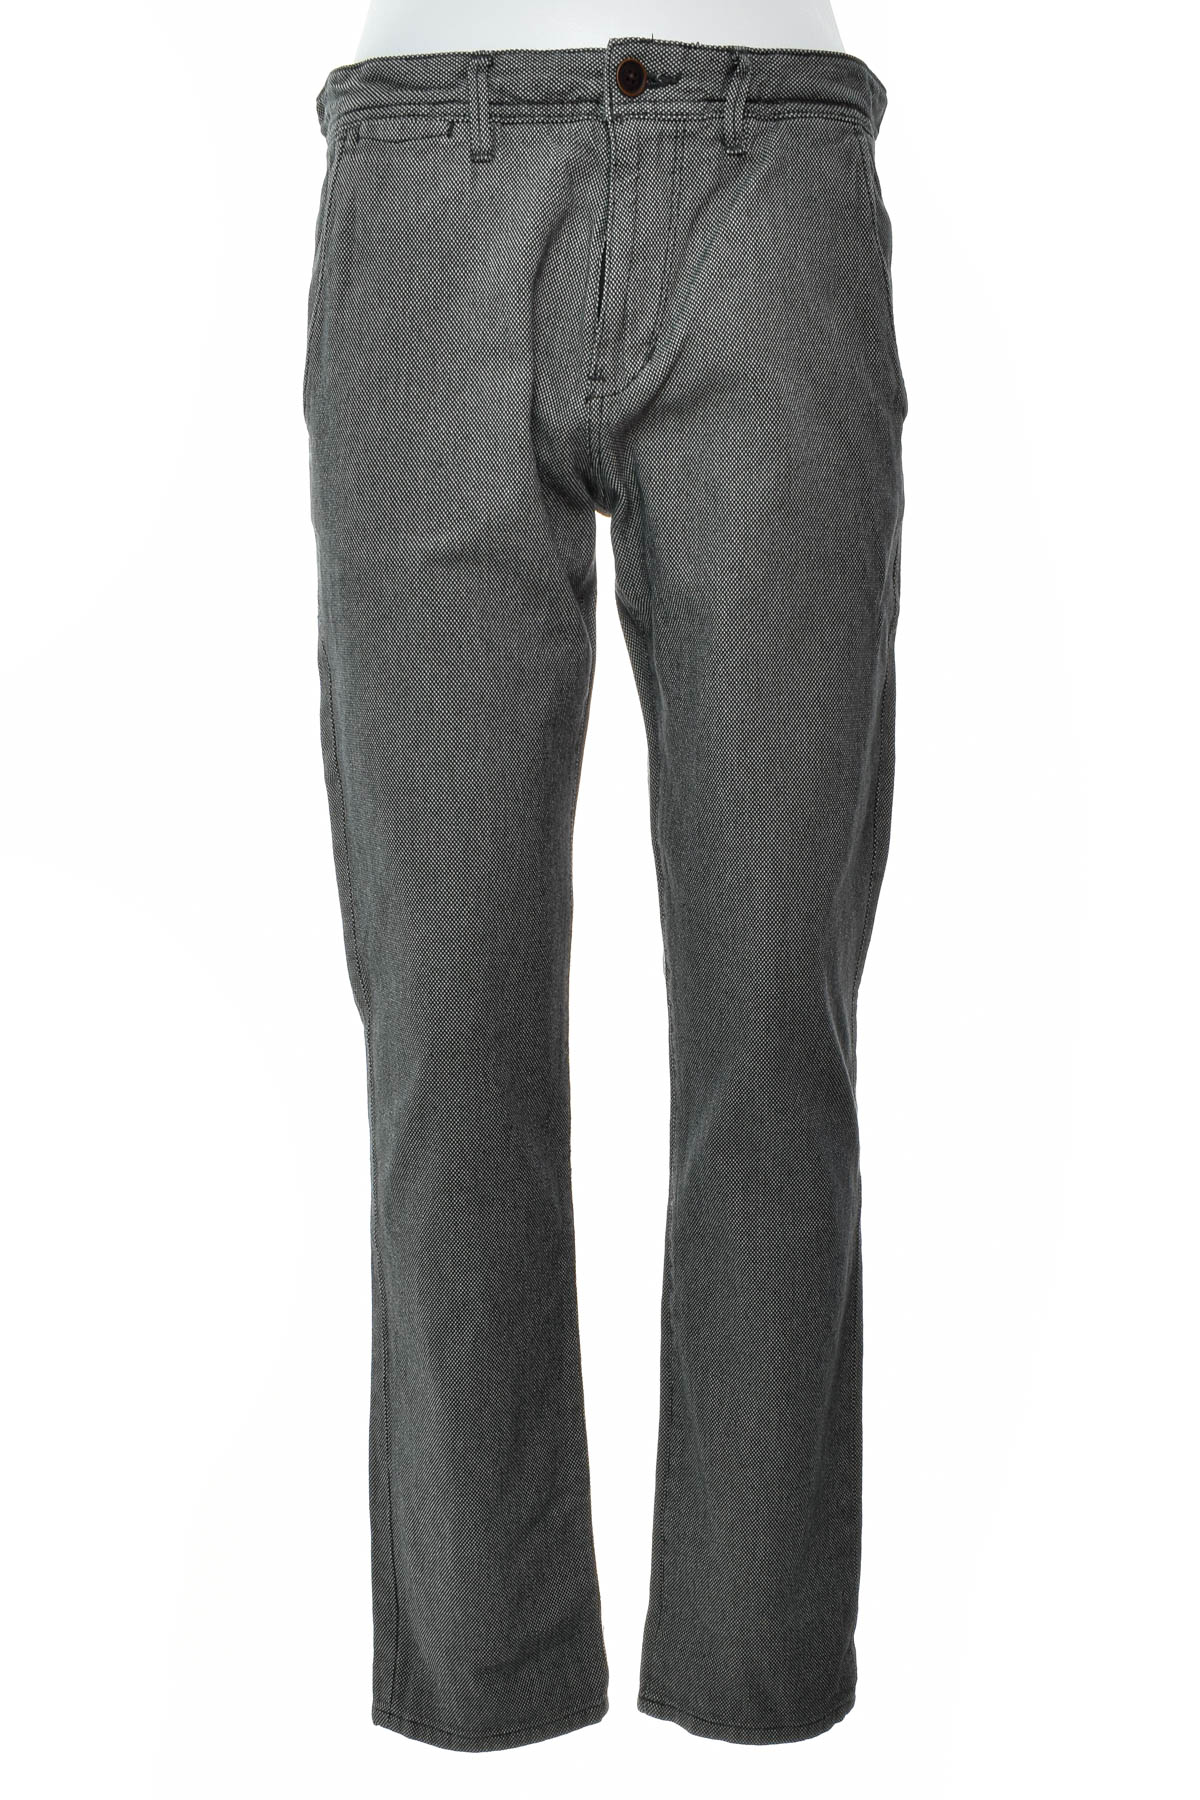 Pantalon pentru bărbați - TOM TAILOR Denim - 0